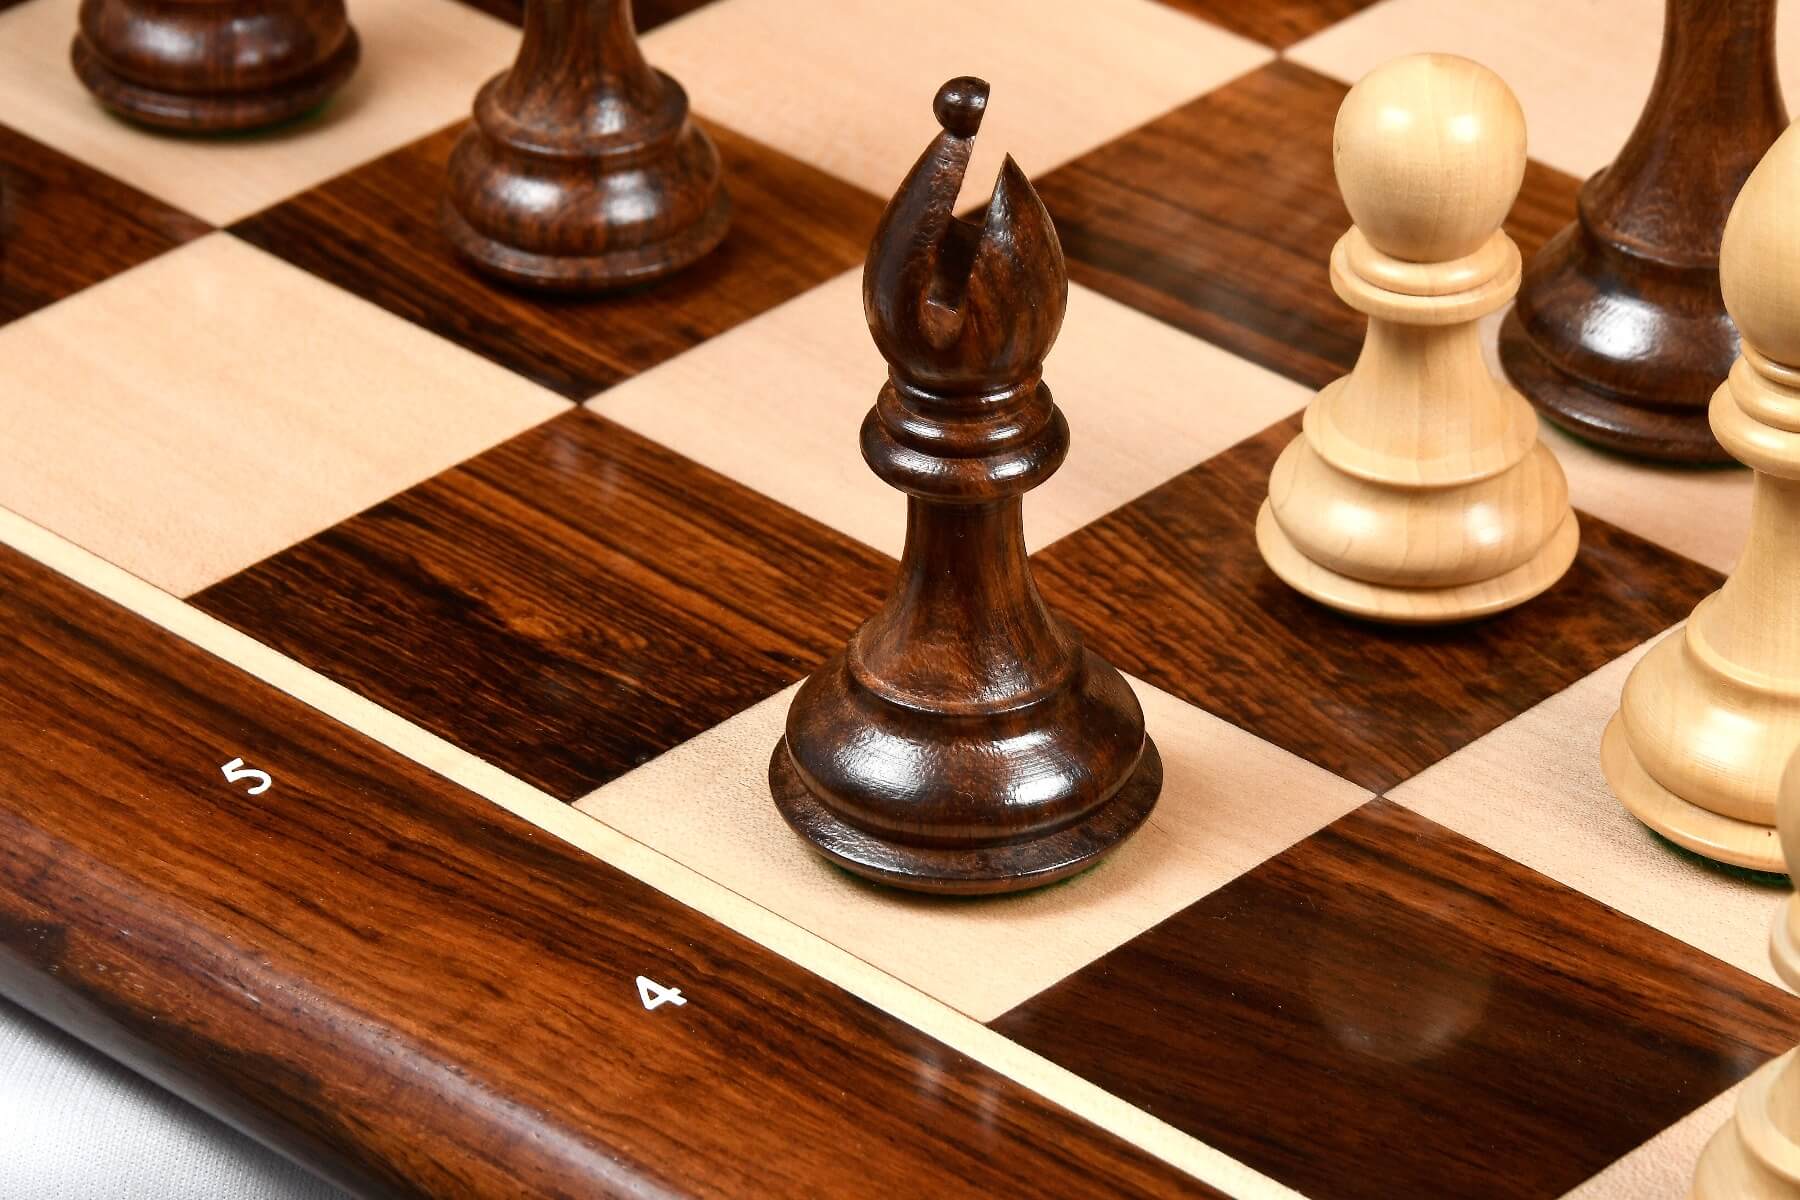 Schönes Schachspiel aus Holz Des Königs Schachbretter